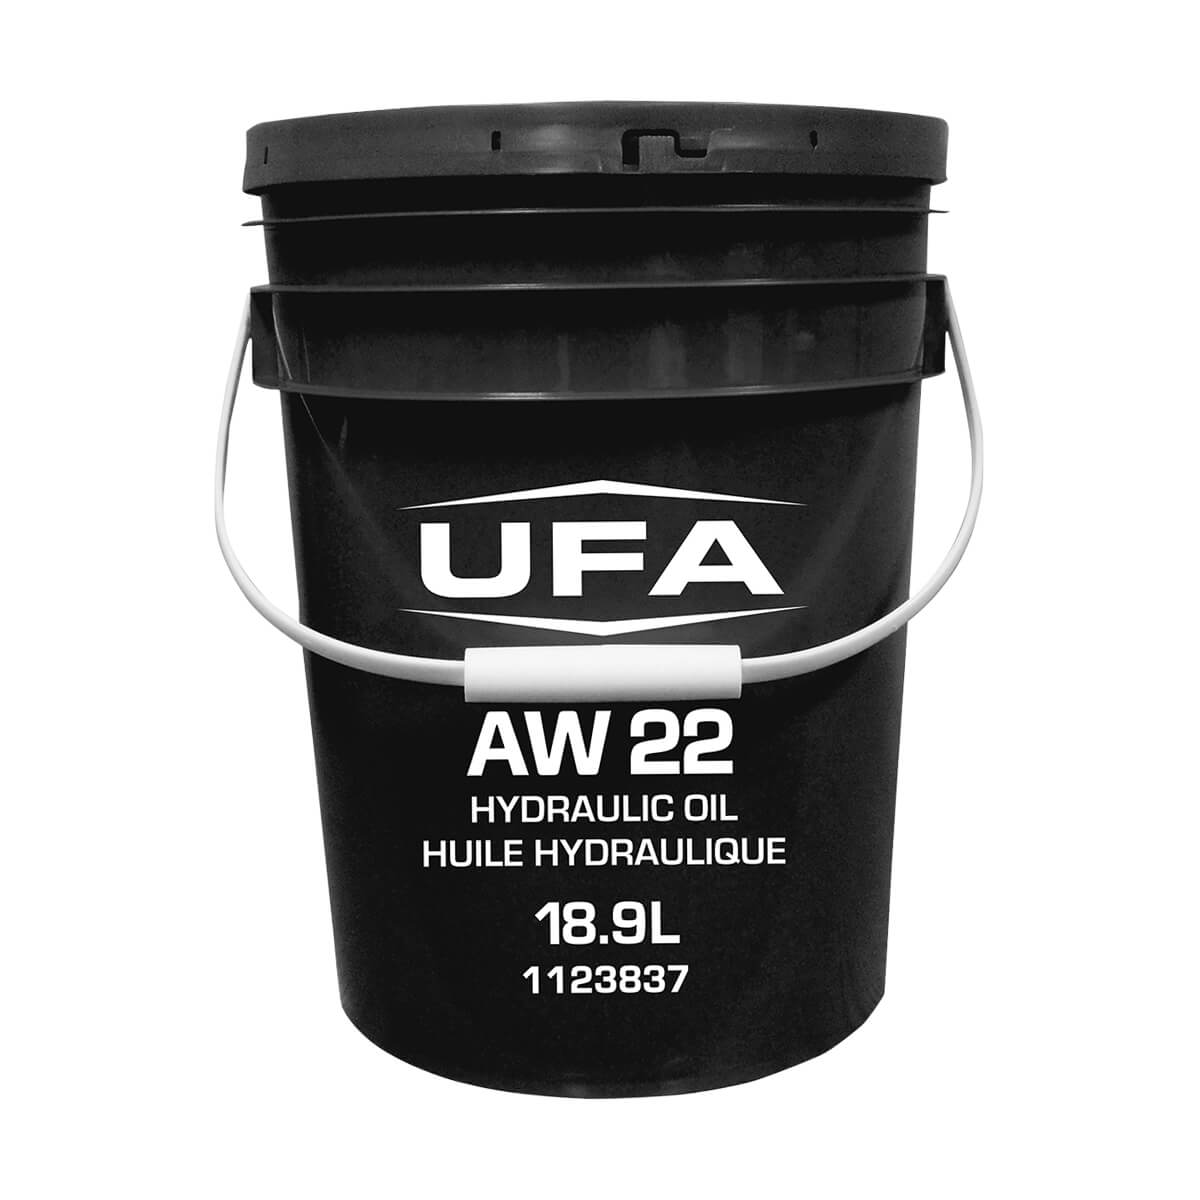 UFA Anti-Wear Hydraulic Oil AW 22 - 18.9 L